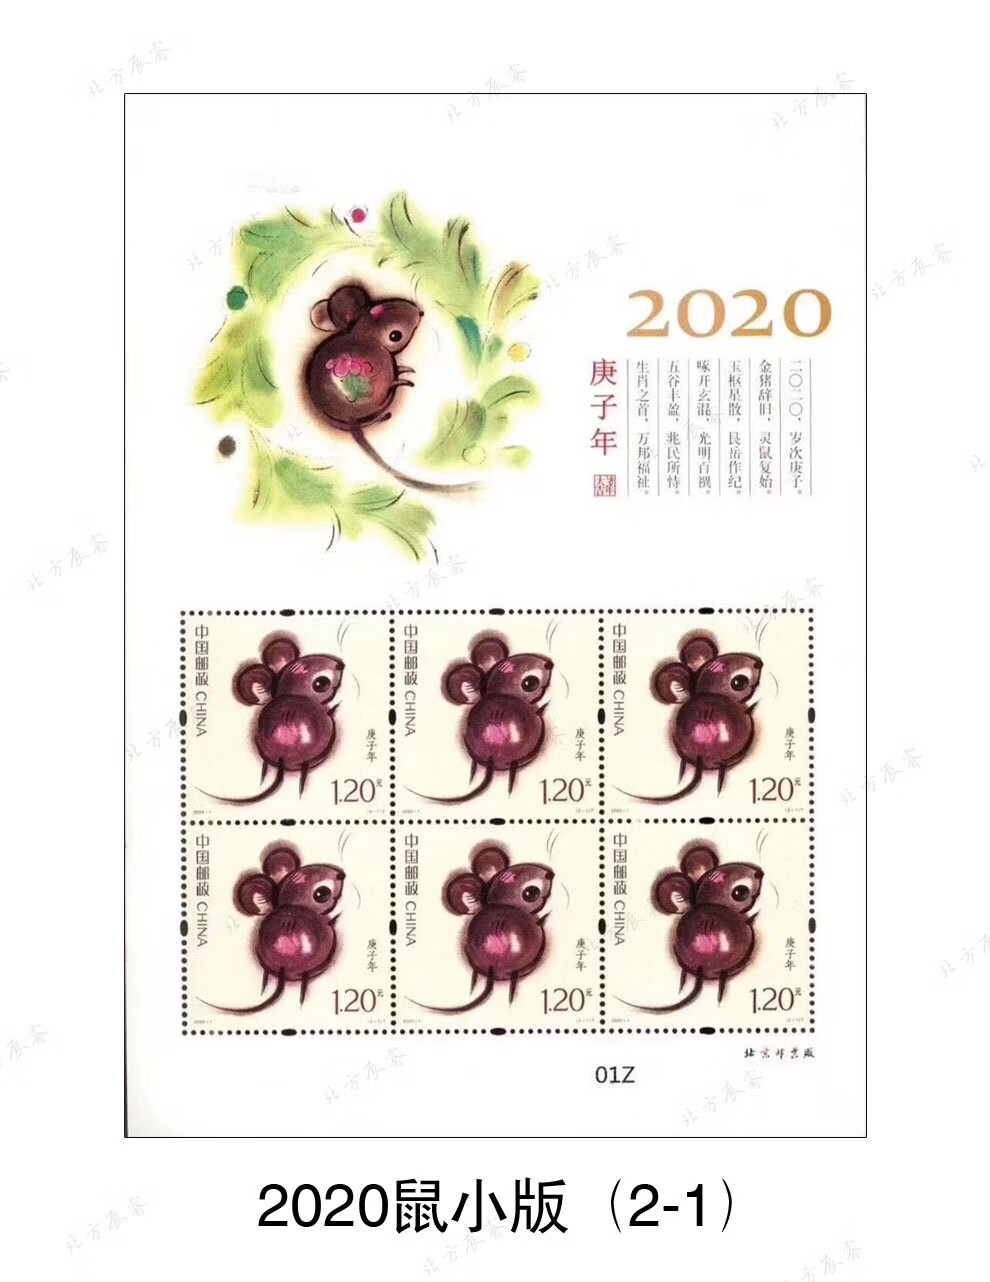 2020年鼠生肖邮票金系列大全分类购买2020年鼠大版四轮生肖鼠邮票